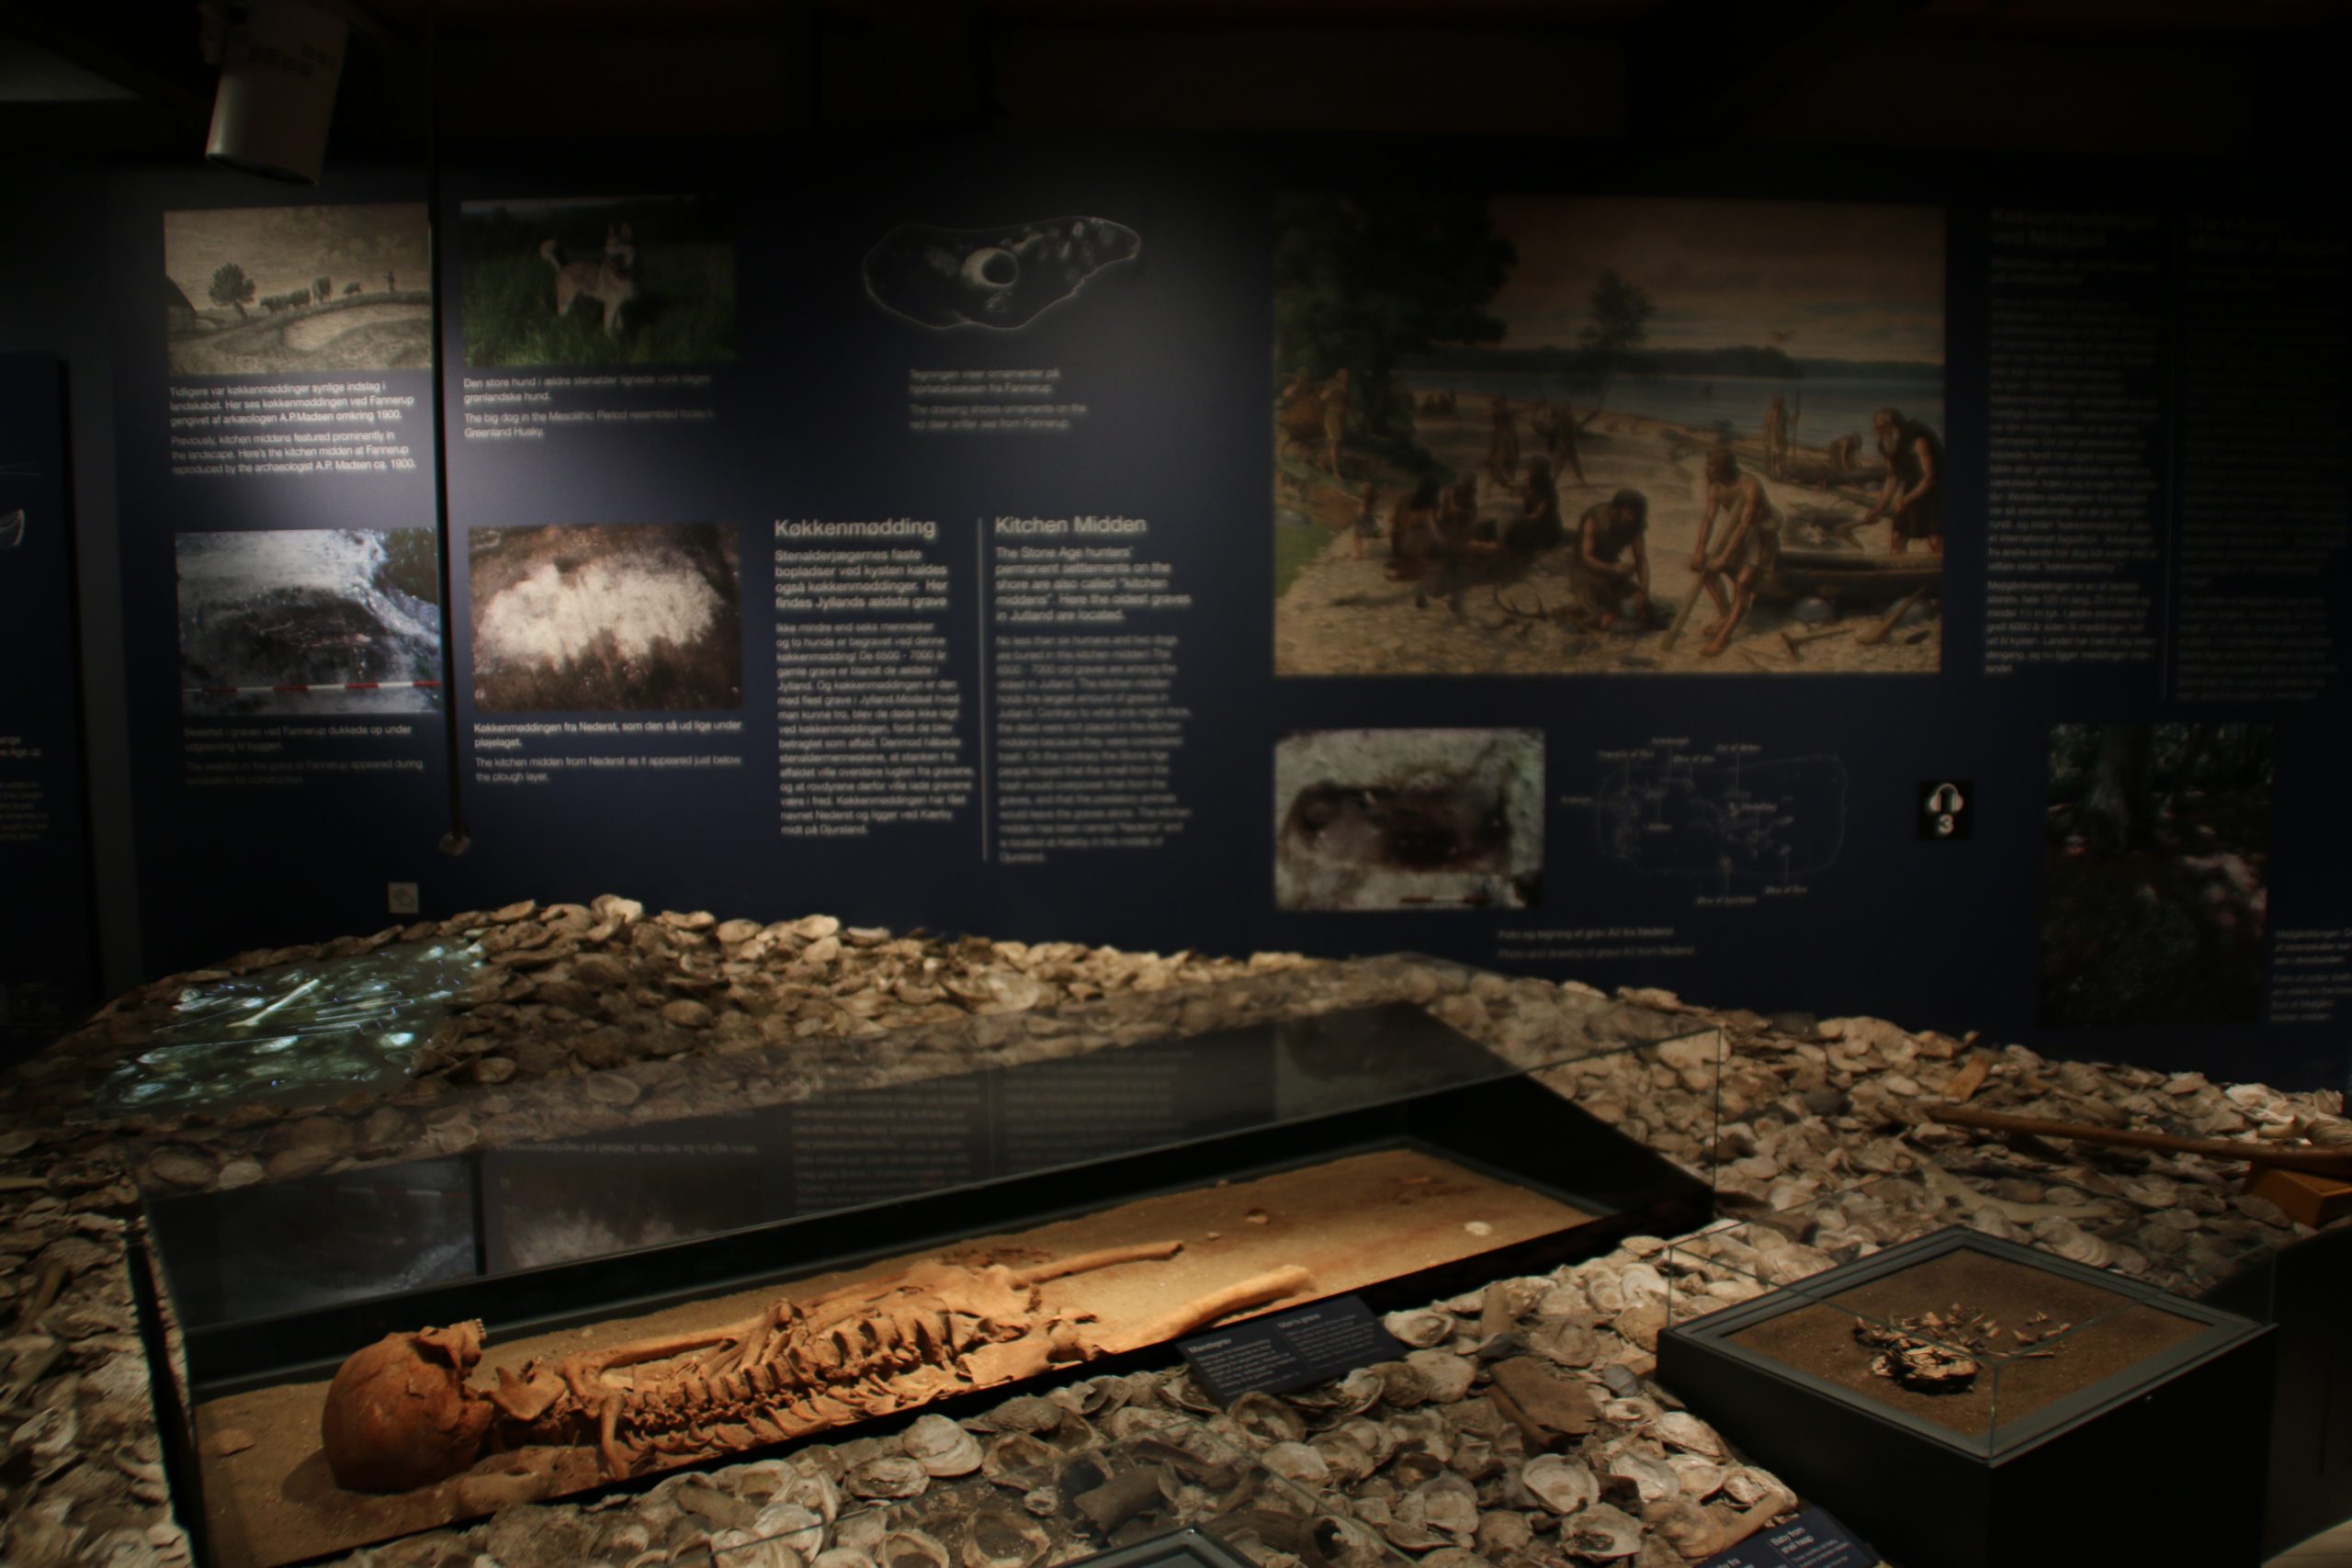 Экспозиция про находки, сделанные на месте раскопок кухонных куч в лесу поместья Мейлгорд, в музее г. Грено, Дания. Фото 12 сент. 2020